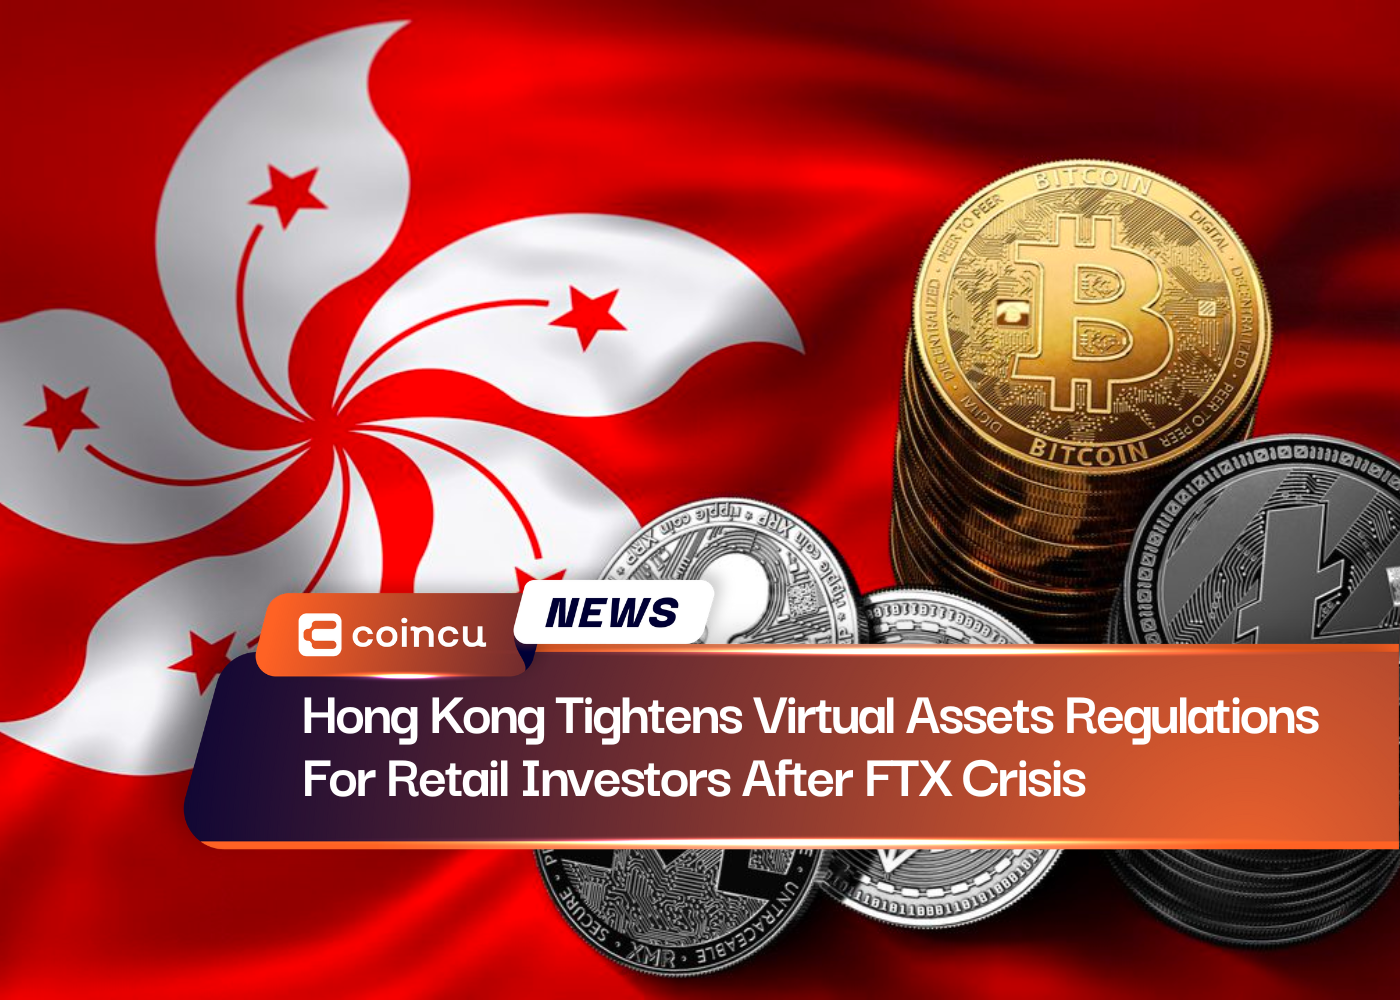 홍콩, FTX 위기 이후 소매 투자자에 대한 가상자산 규제 강화